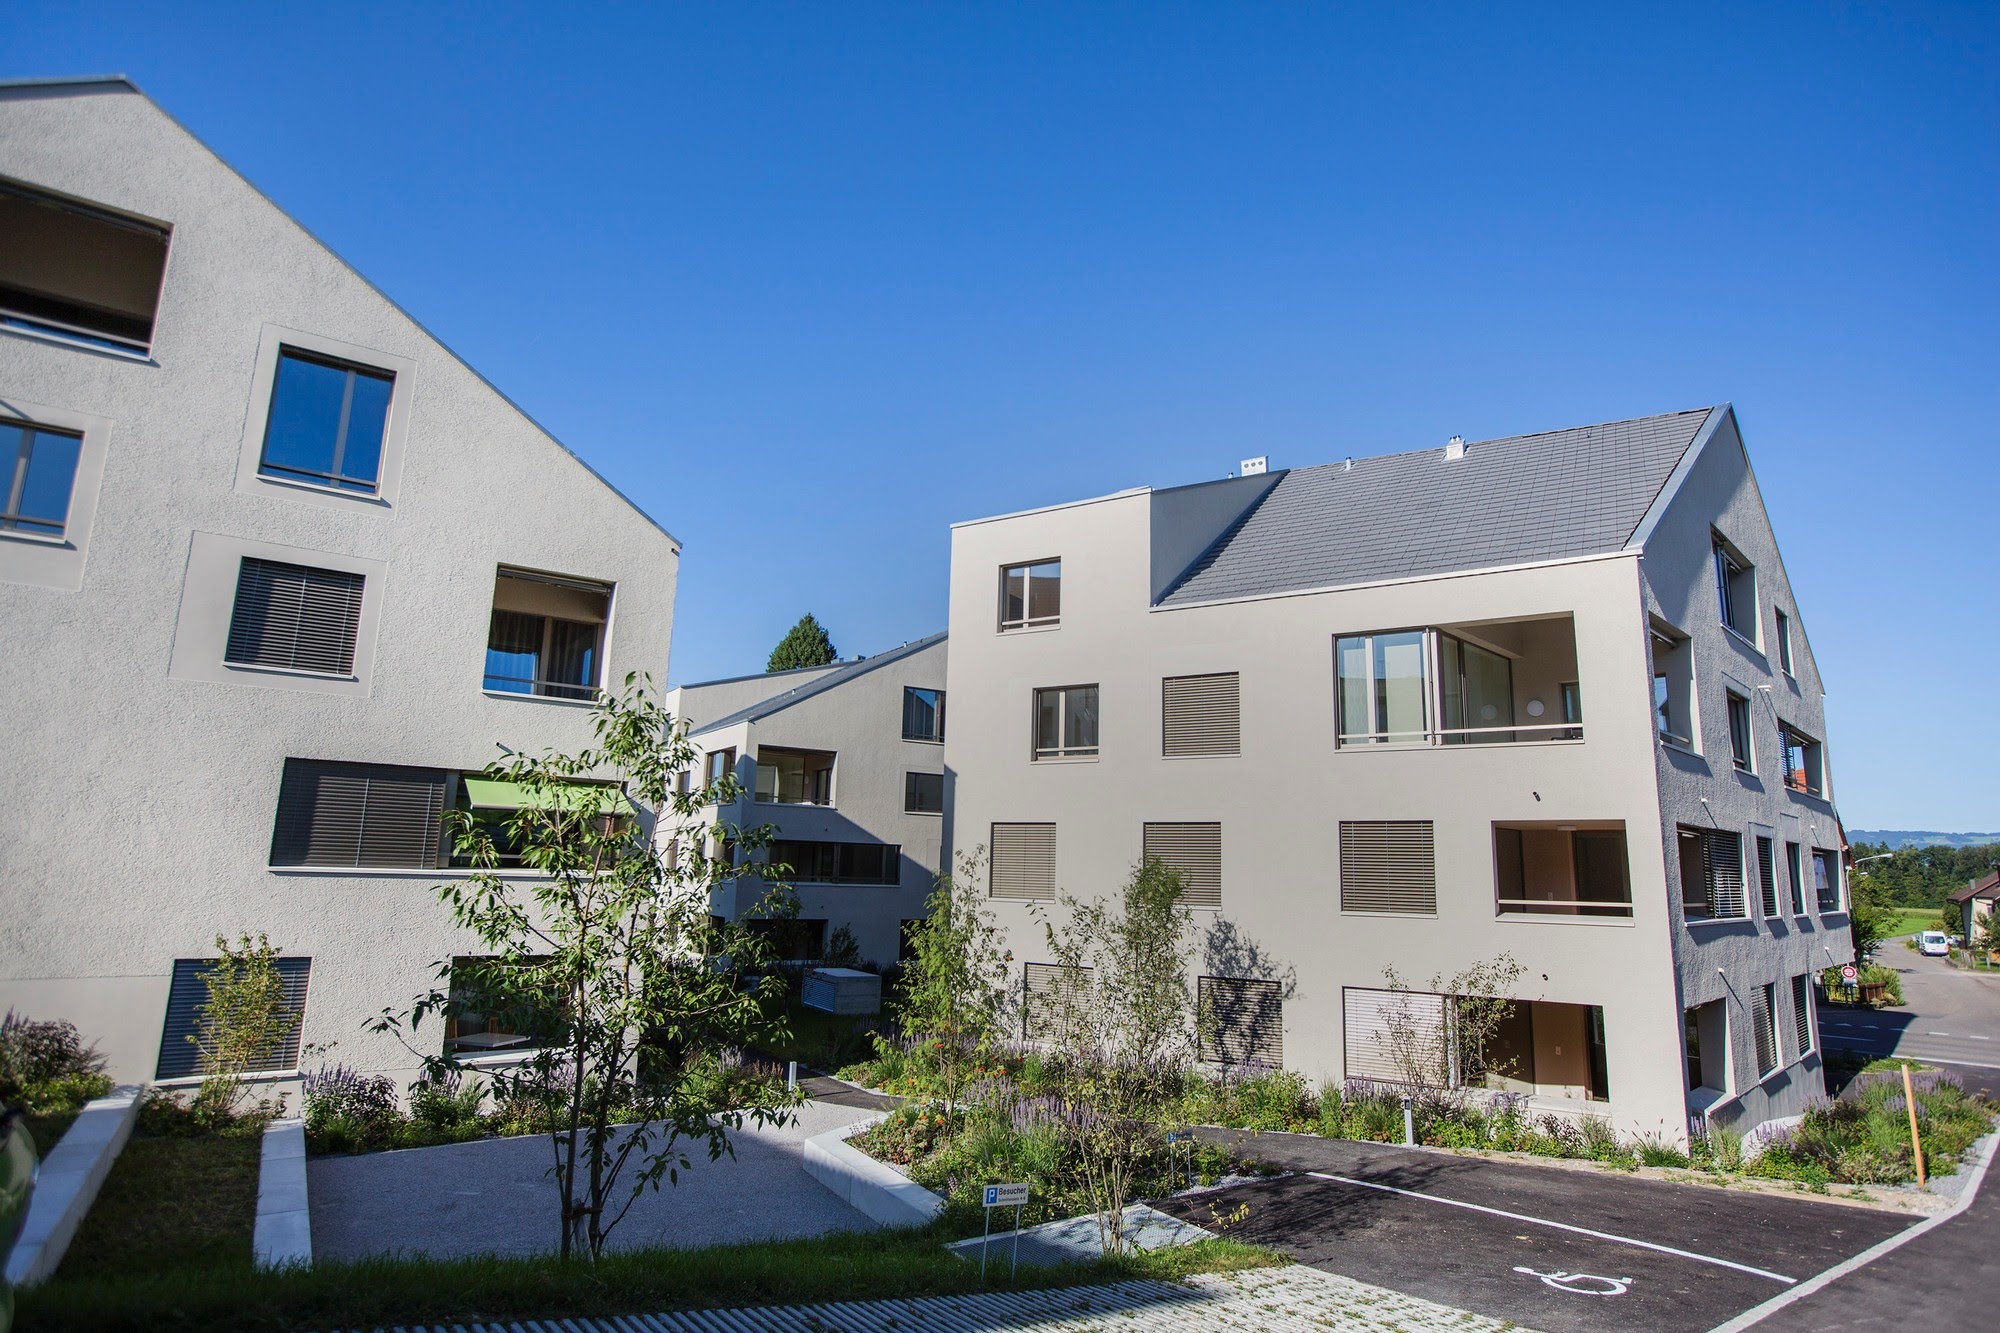 Wohnungsbau,Aussenwärmedämmung,Öffentliche Bauten Wohnüberbauung Schmittenplatz